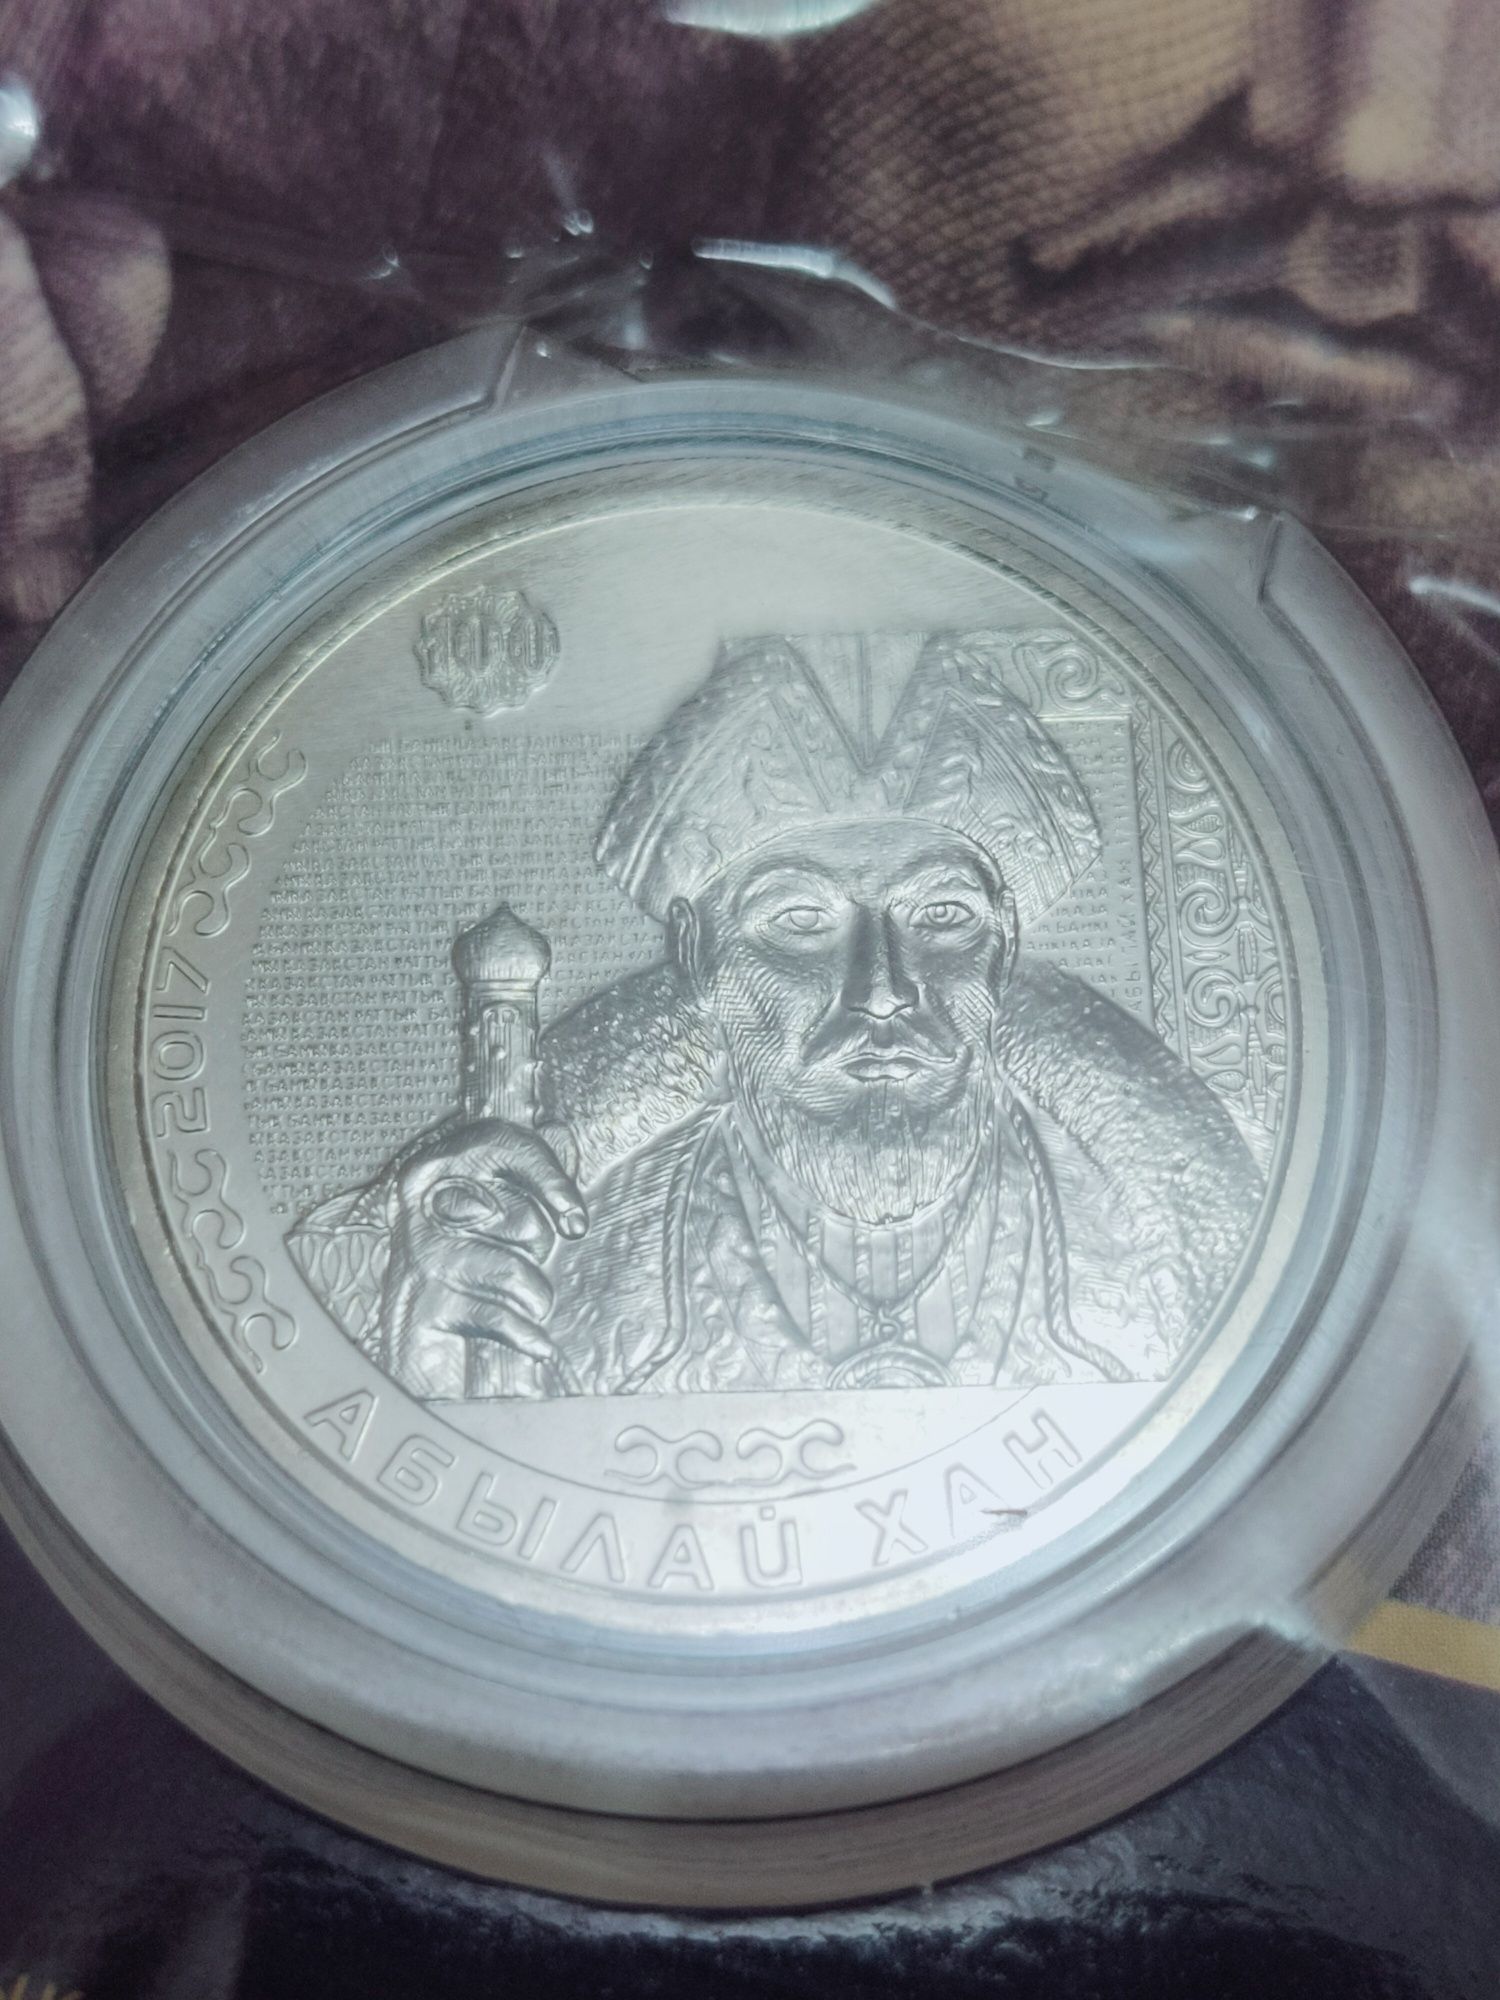 6.)  Комплект из 4 монет Казахстана